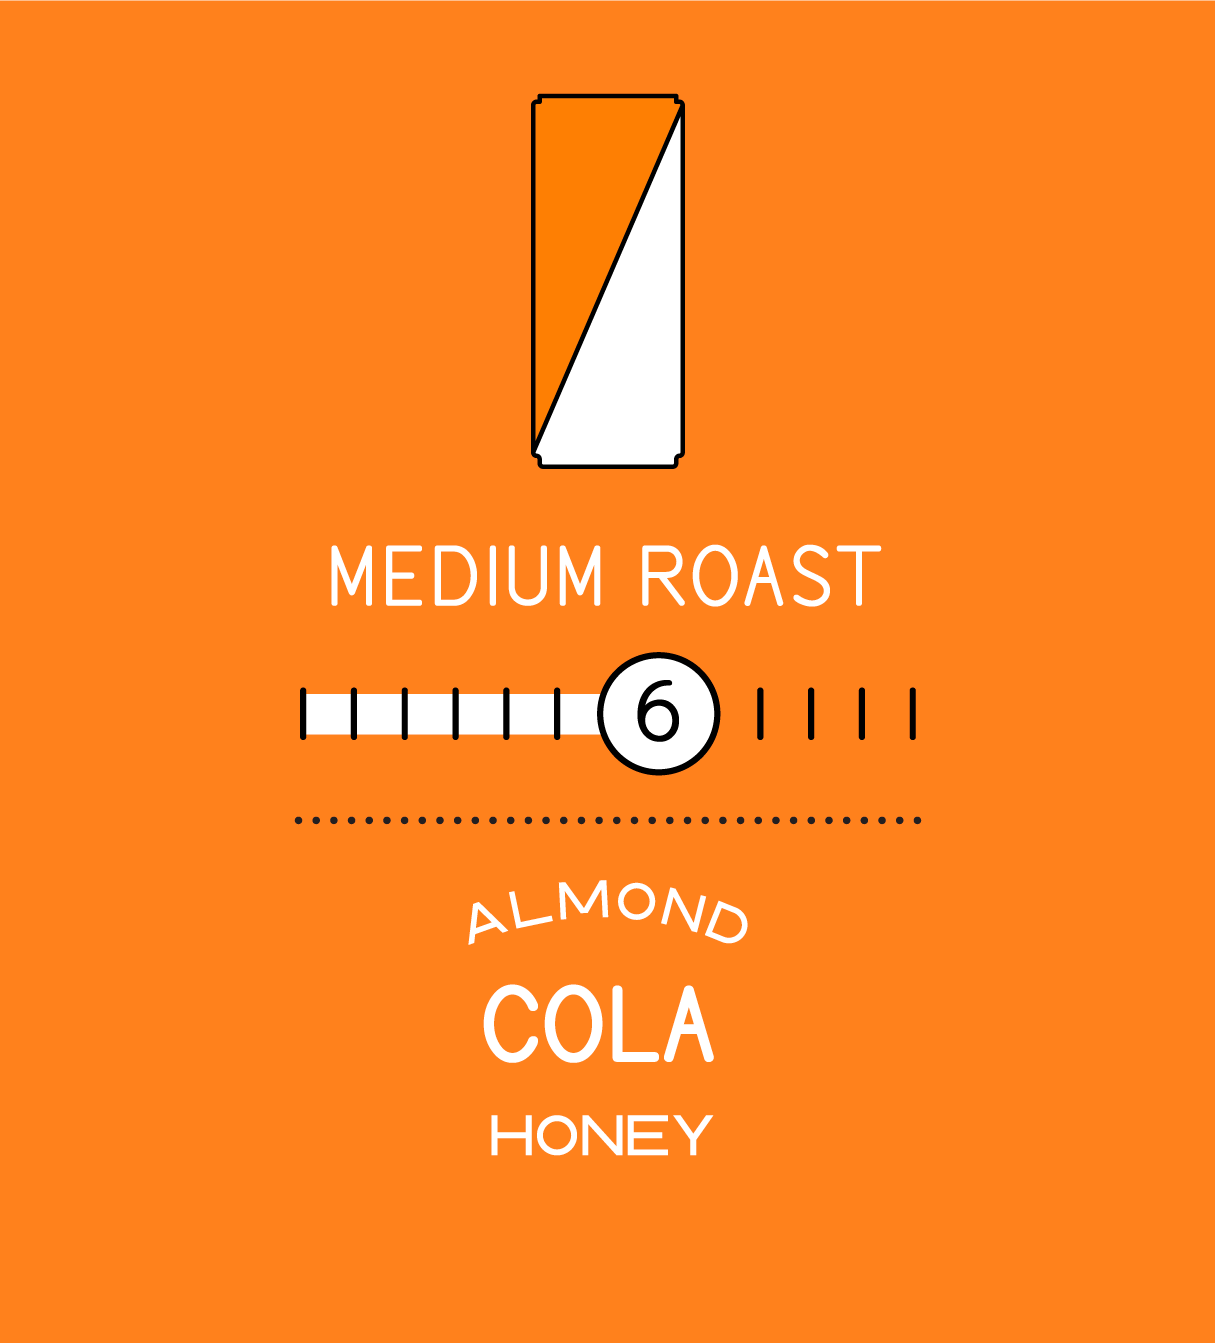 Medium Roast. Roastlevel 6. Almond cola and honey. 